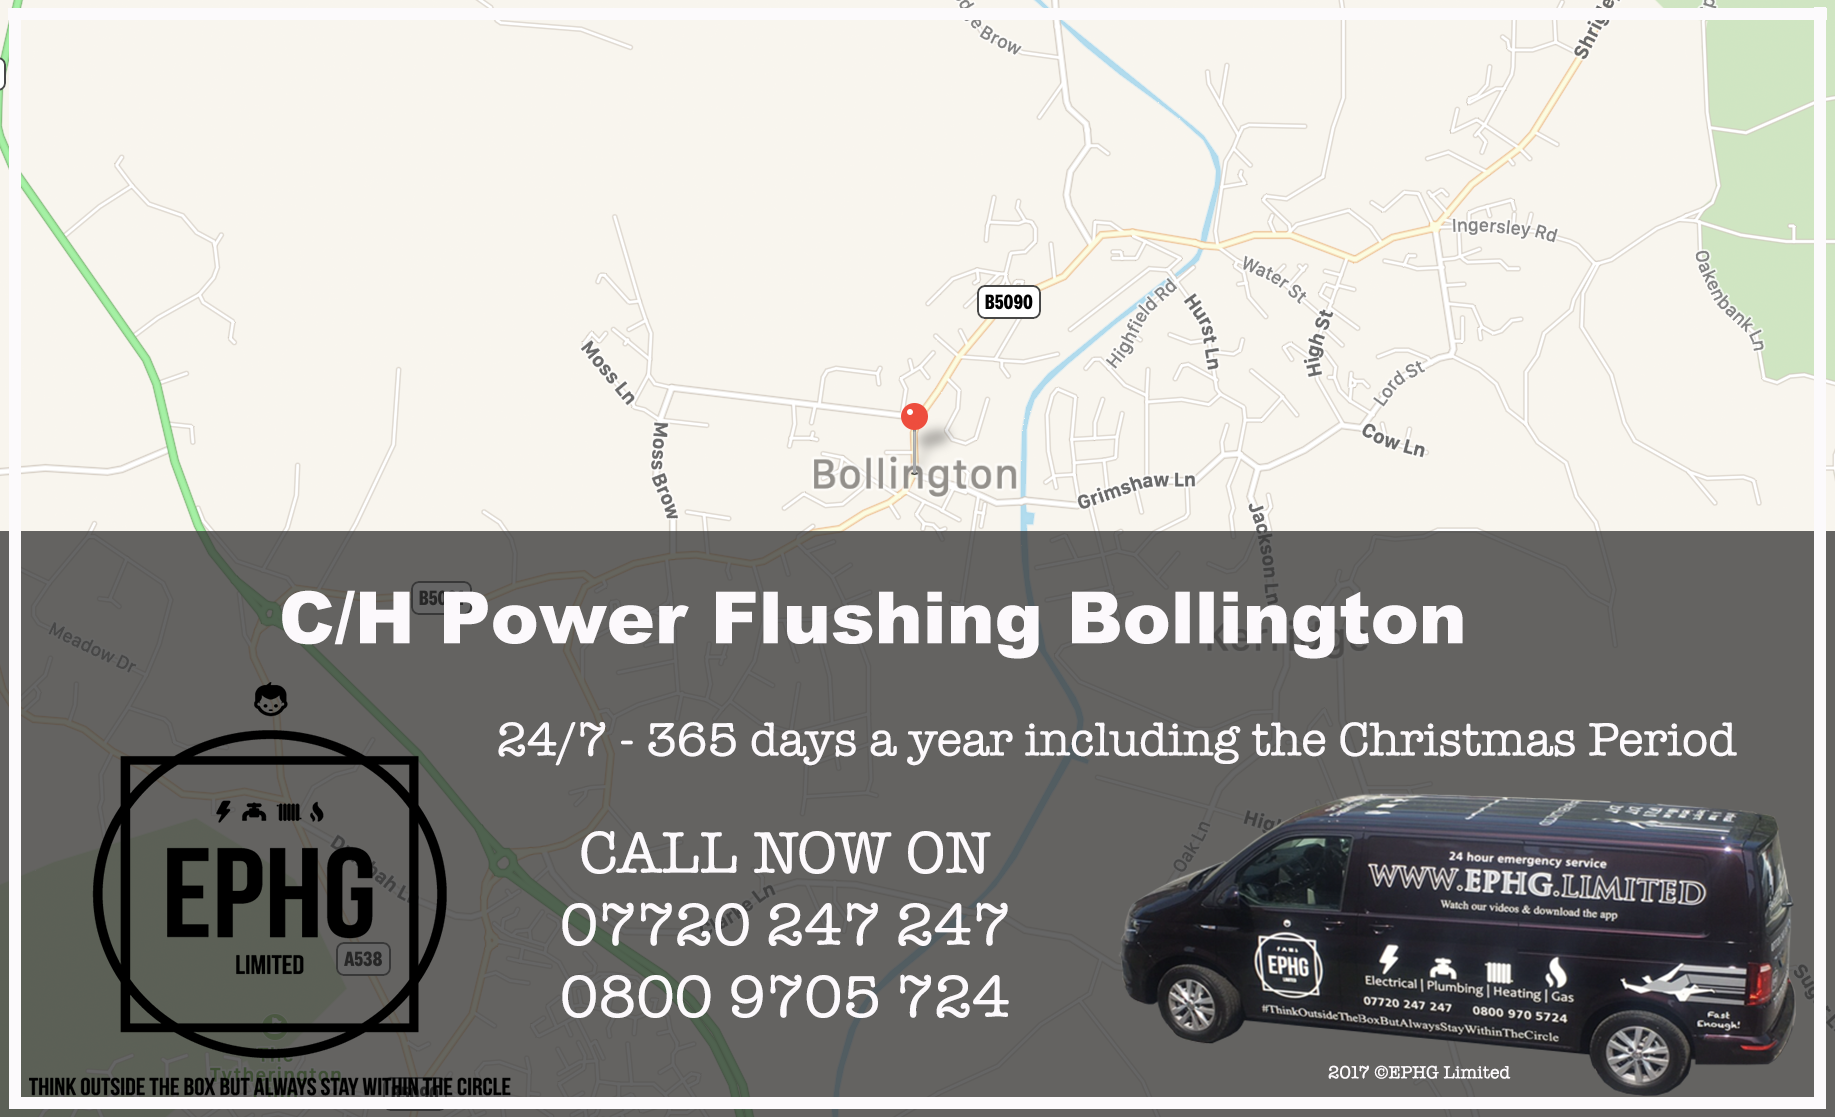 Central Heating Power Flush Bollington